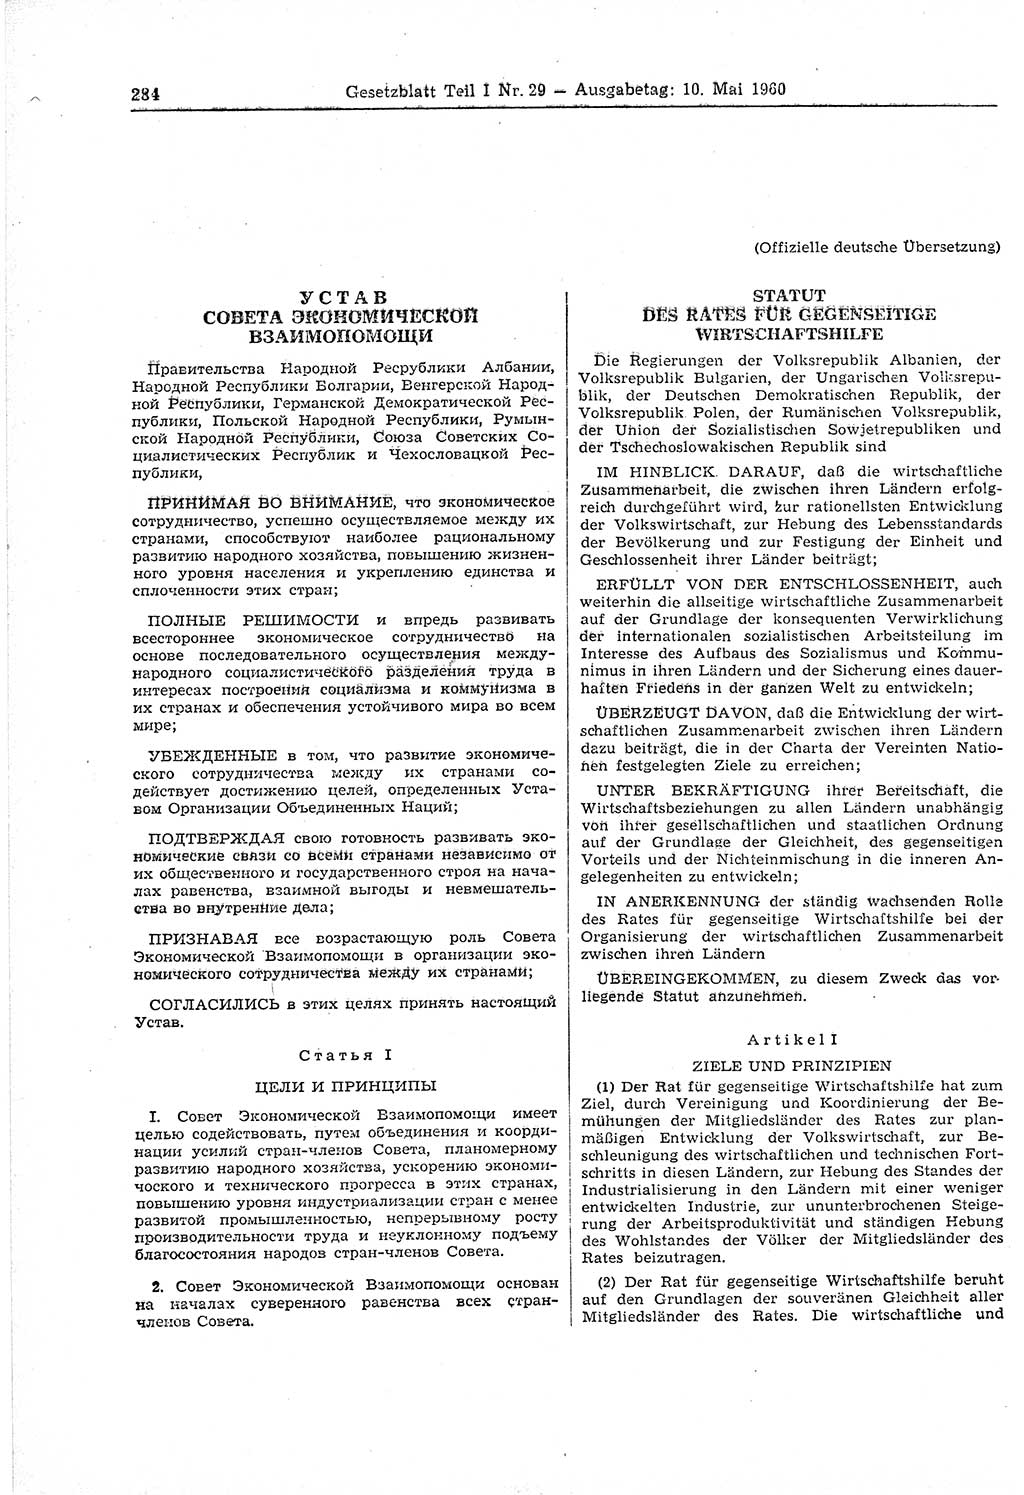 Gesetzblatt (GBl.) der Deutschen Demokratischen Republik (DDR) Teil Ⅰ 1960, Seite 284 (GBl. DDR Ⅰ 1960, S. 284)